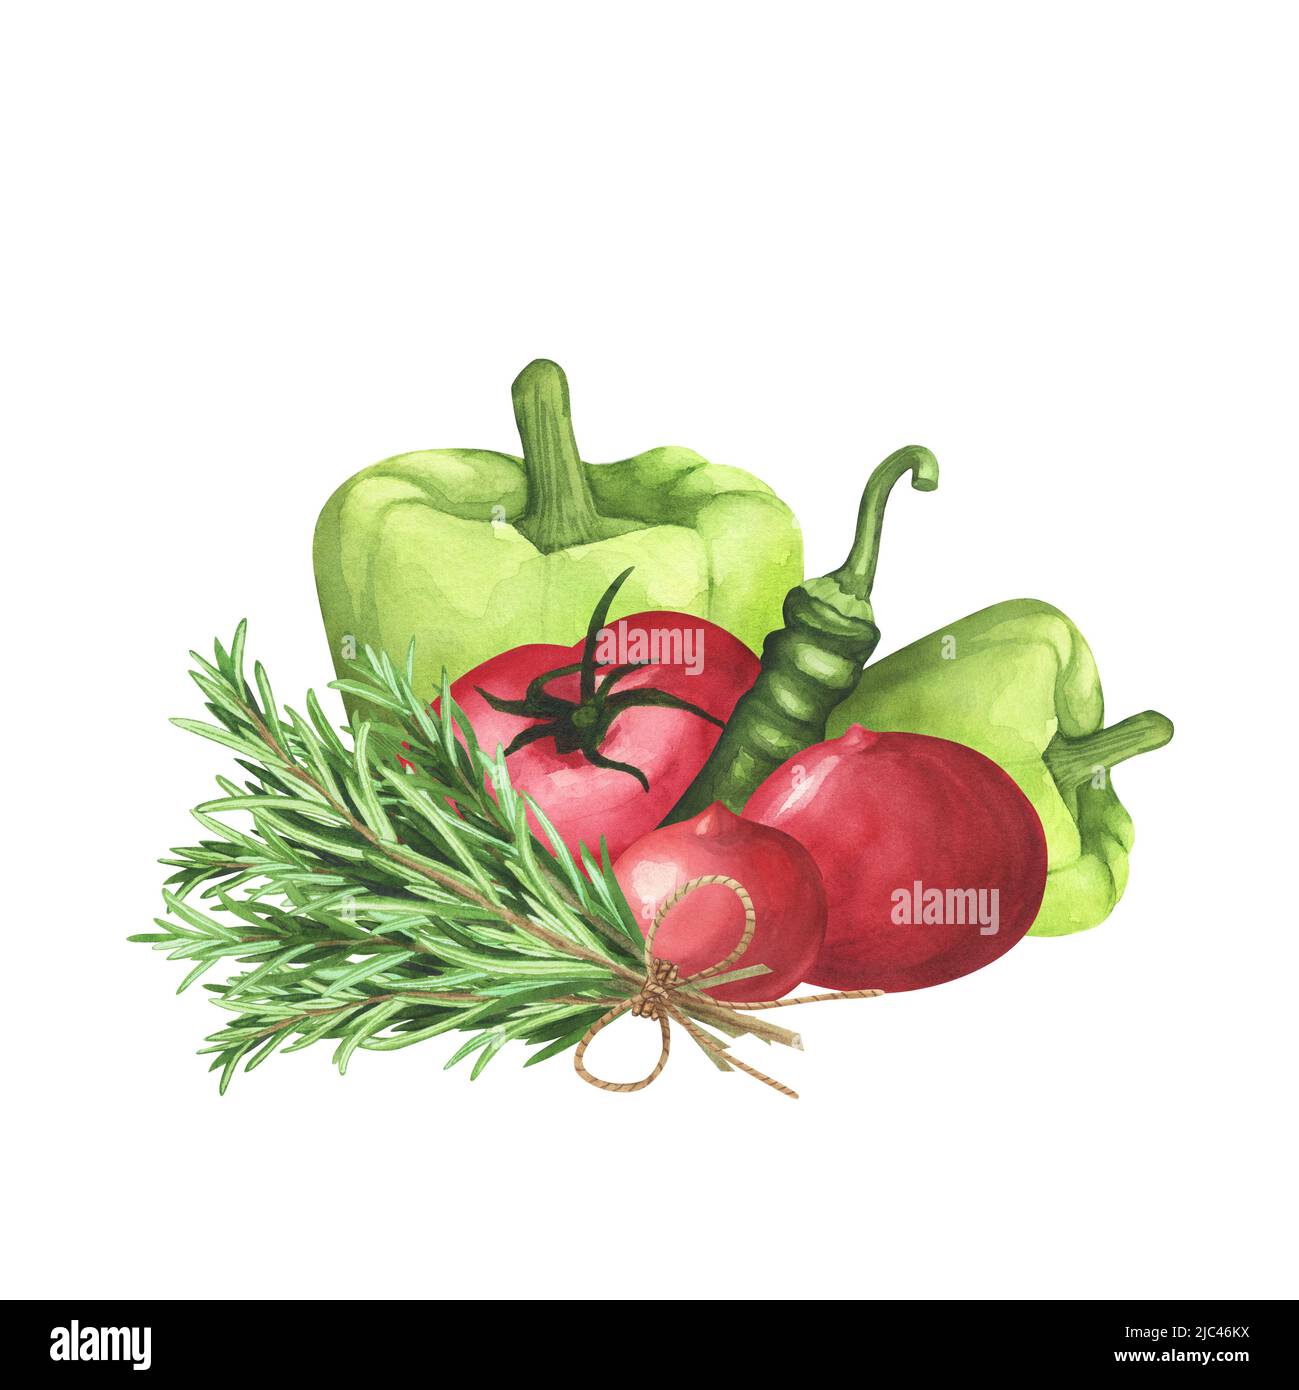 Pomodori maturi, rosmarino fresco, peperone verde su sfondo bianco. Illustrazione del disegno a mano dell'acquerello. Arte per menu di disegno, confezionamento, PR organico Foto Stock